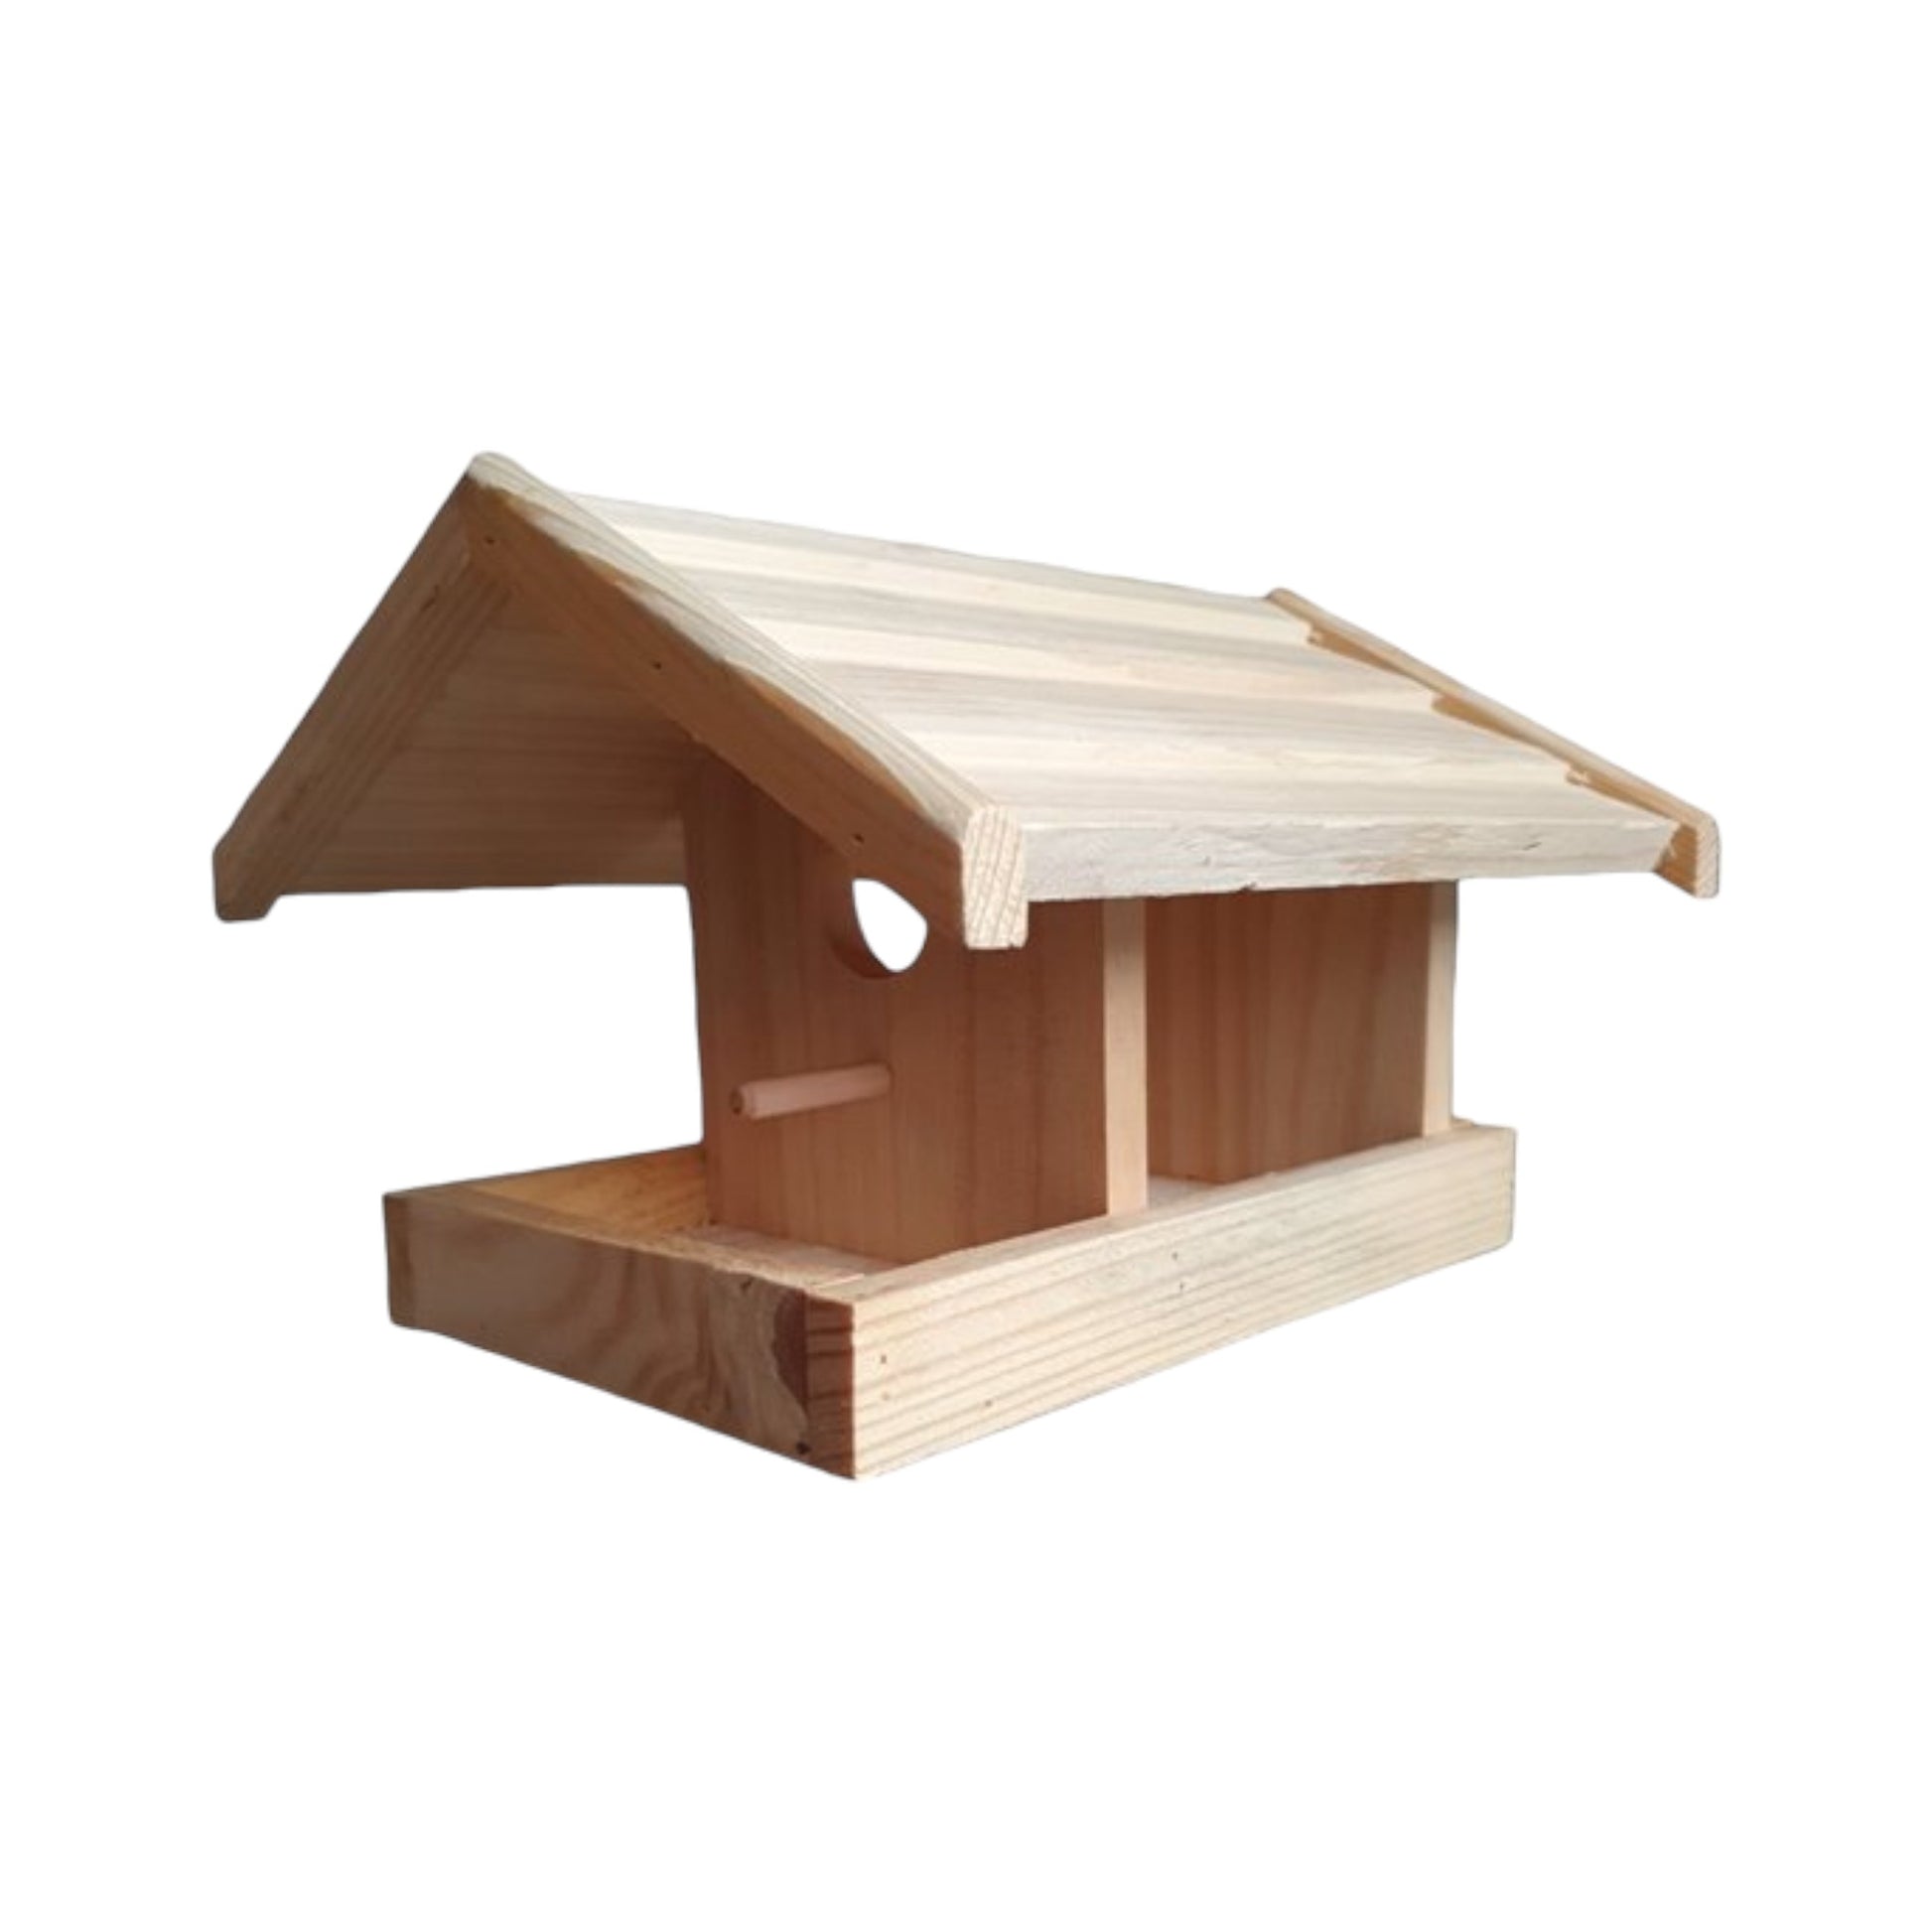 Houten Voederhuisje: Multifunctioneel Vogelhuisje en Voederstation - 24.5x22.5x17cm - Premium Kwaliteit Voedertafel en Voederplaats